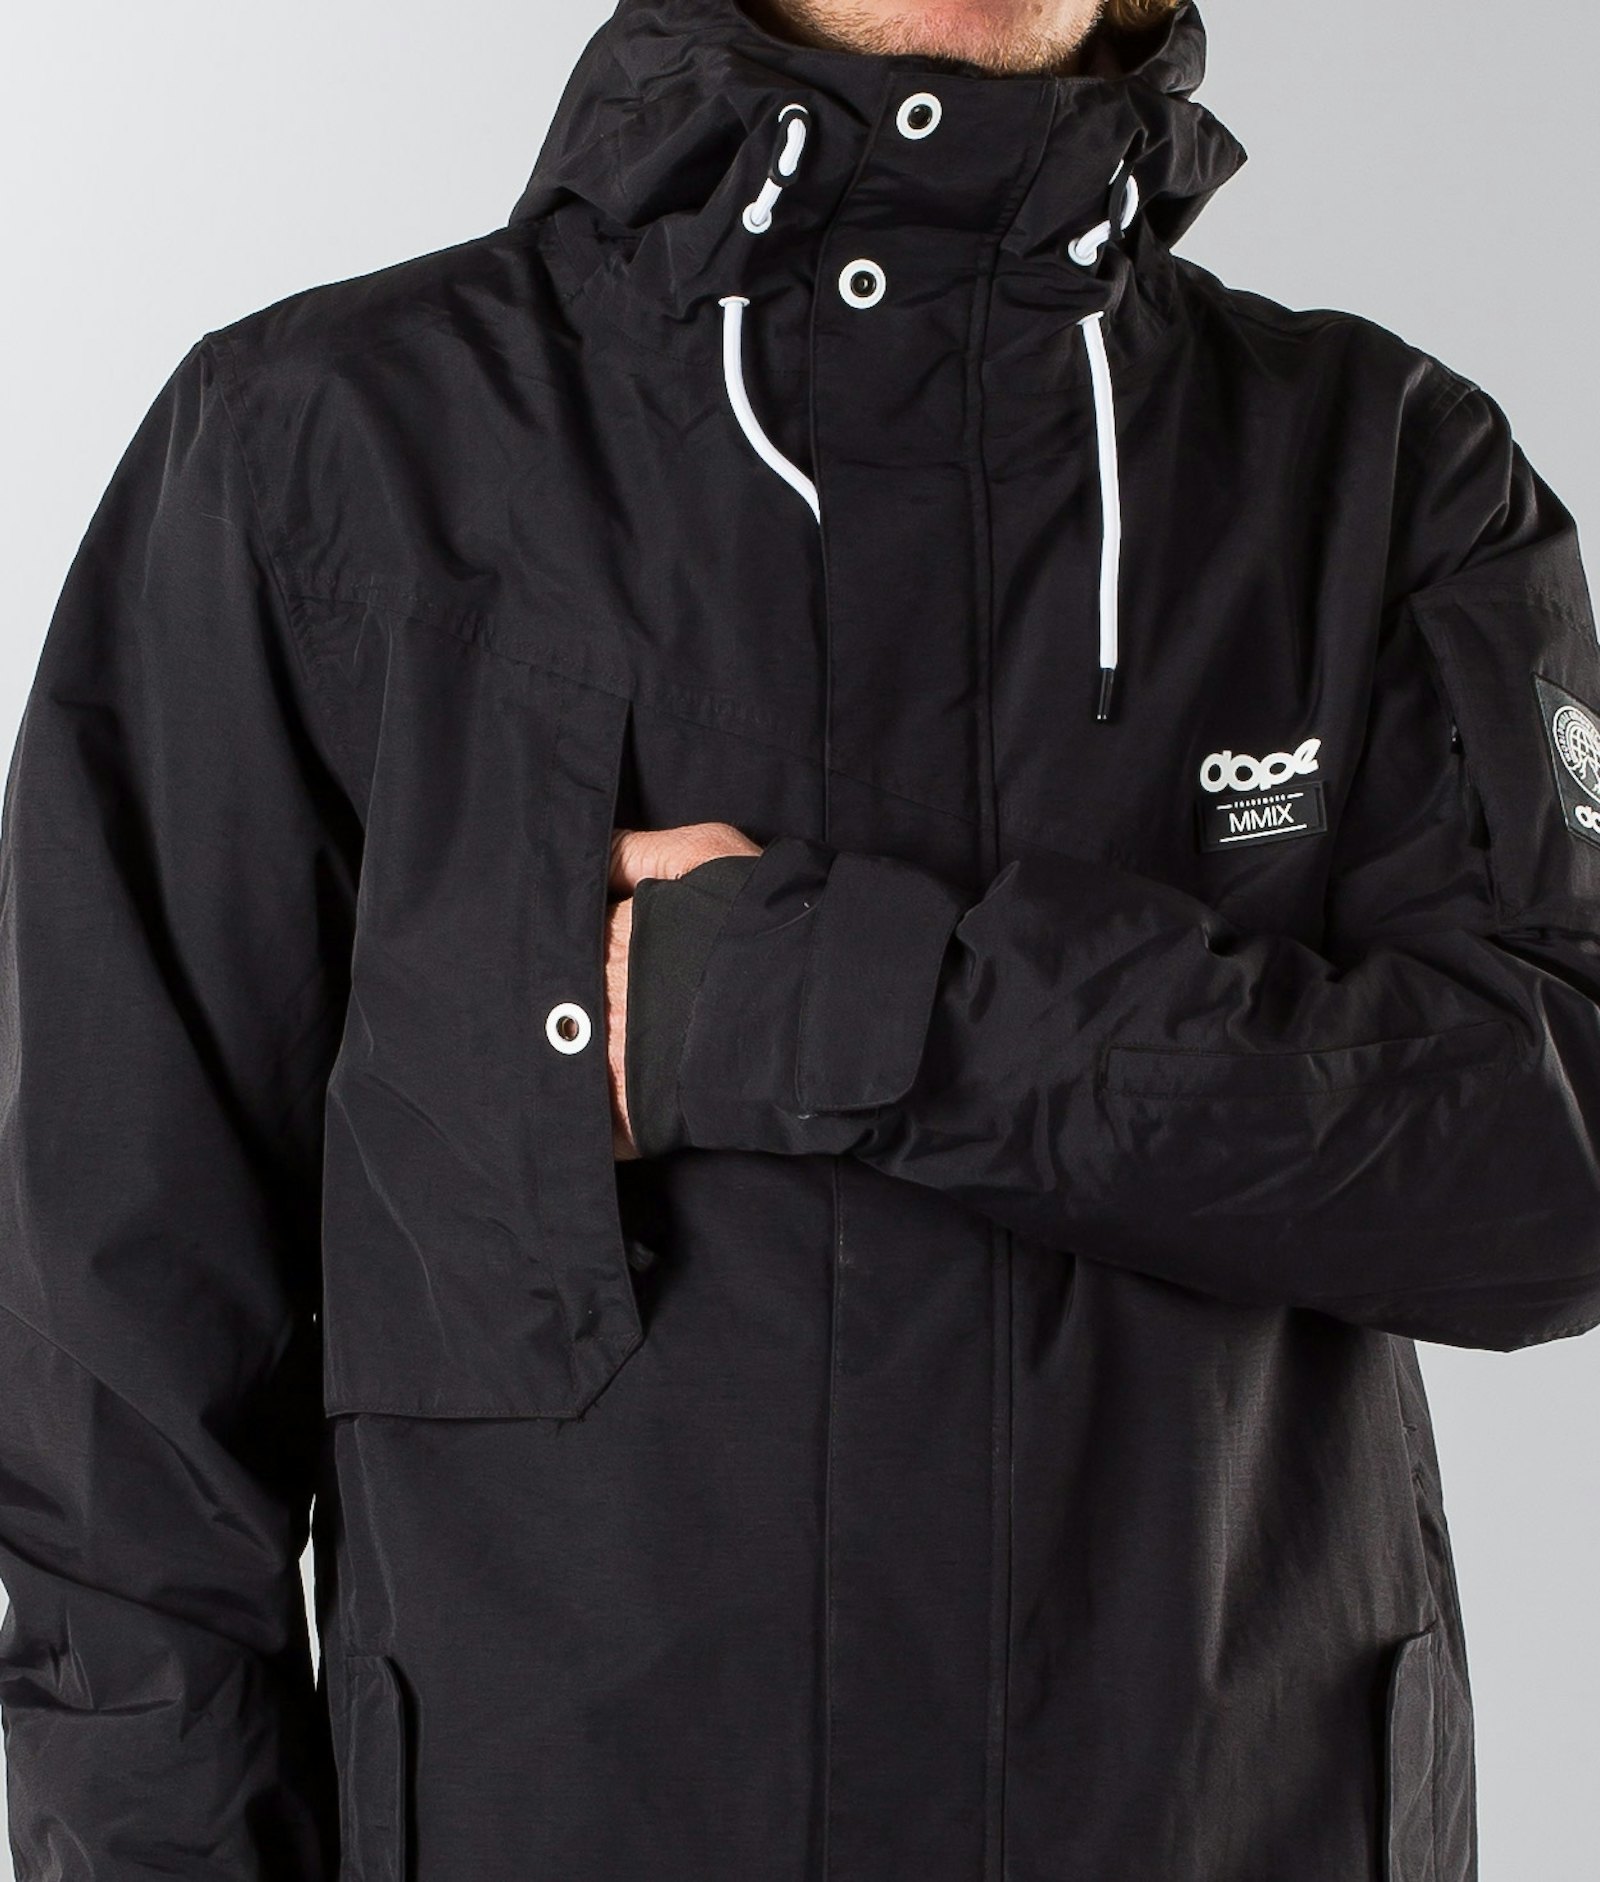 Dope Adept 2018 Snowboard Jacket Men Black/Black